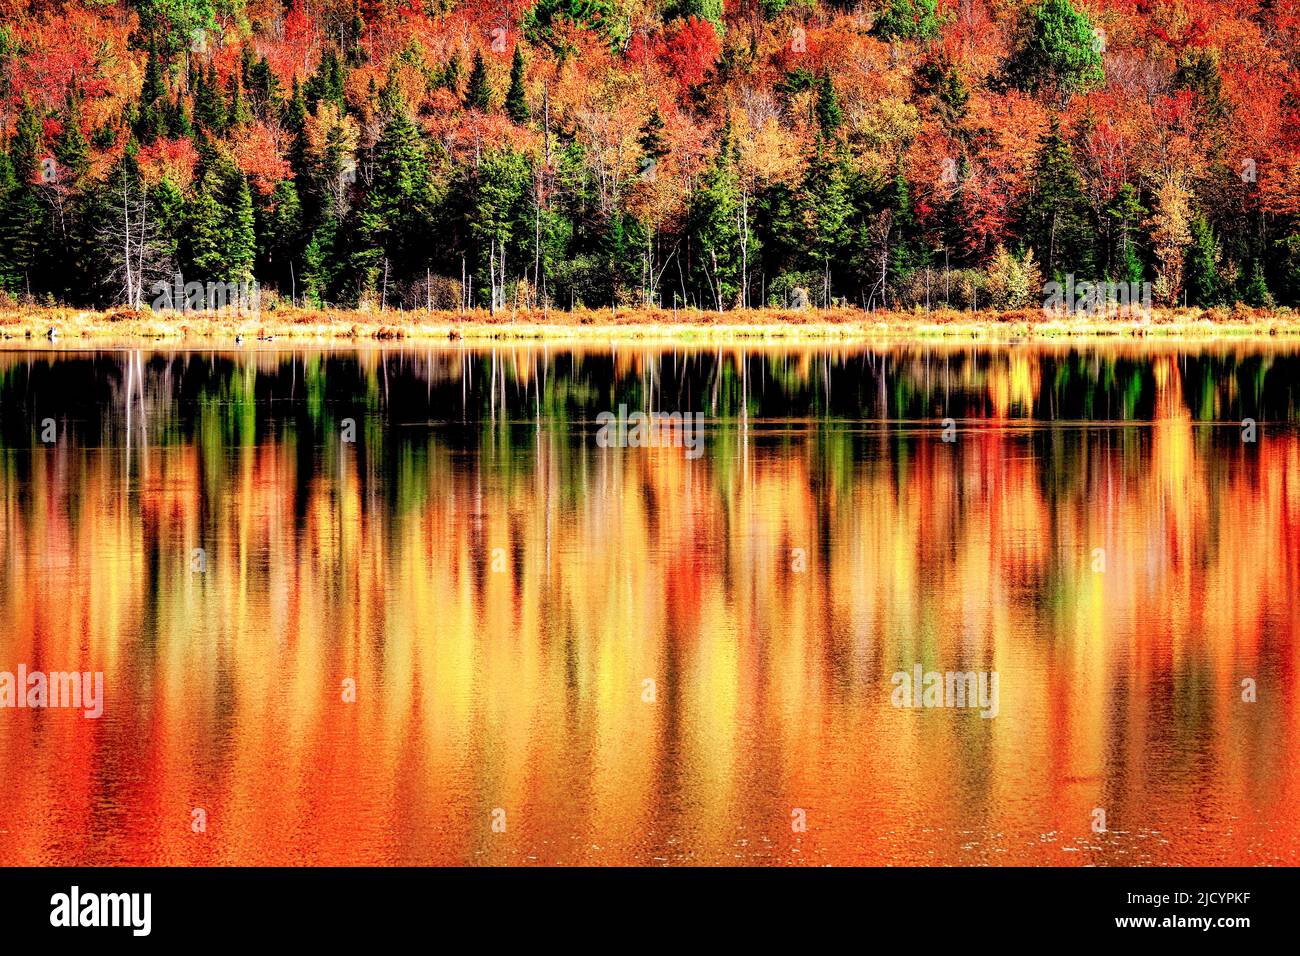 El color de otoño se refleja en las tranquilas aguas de Long Pond cerca de Belvidere Corners, Vermont. Foto de stock